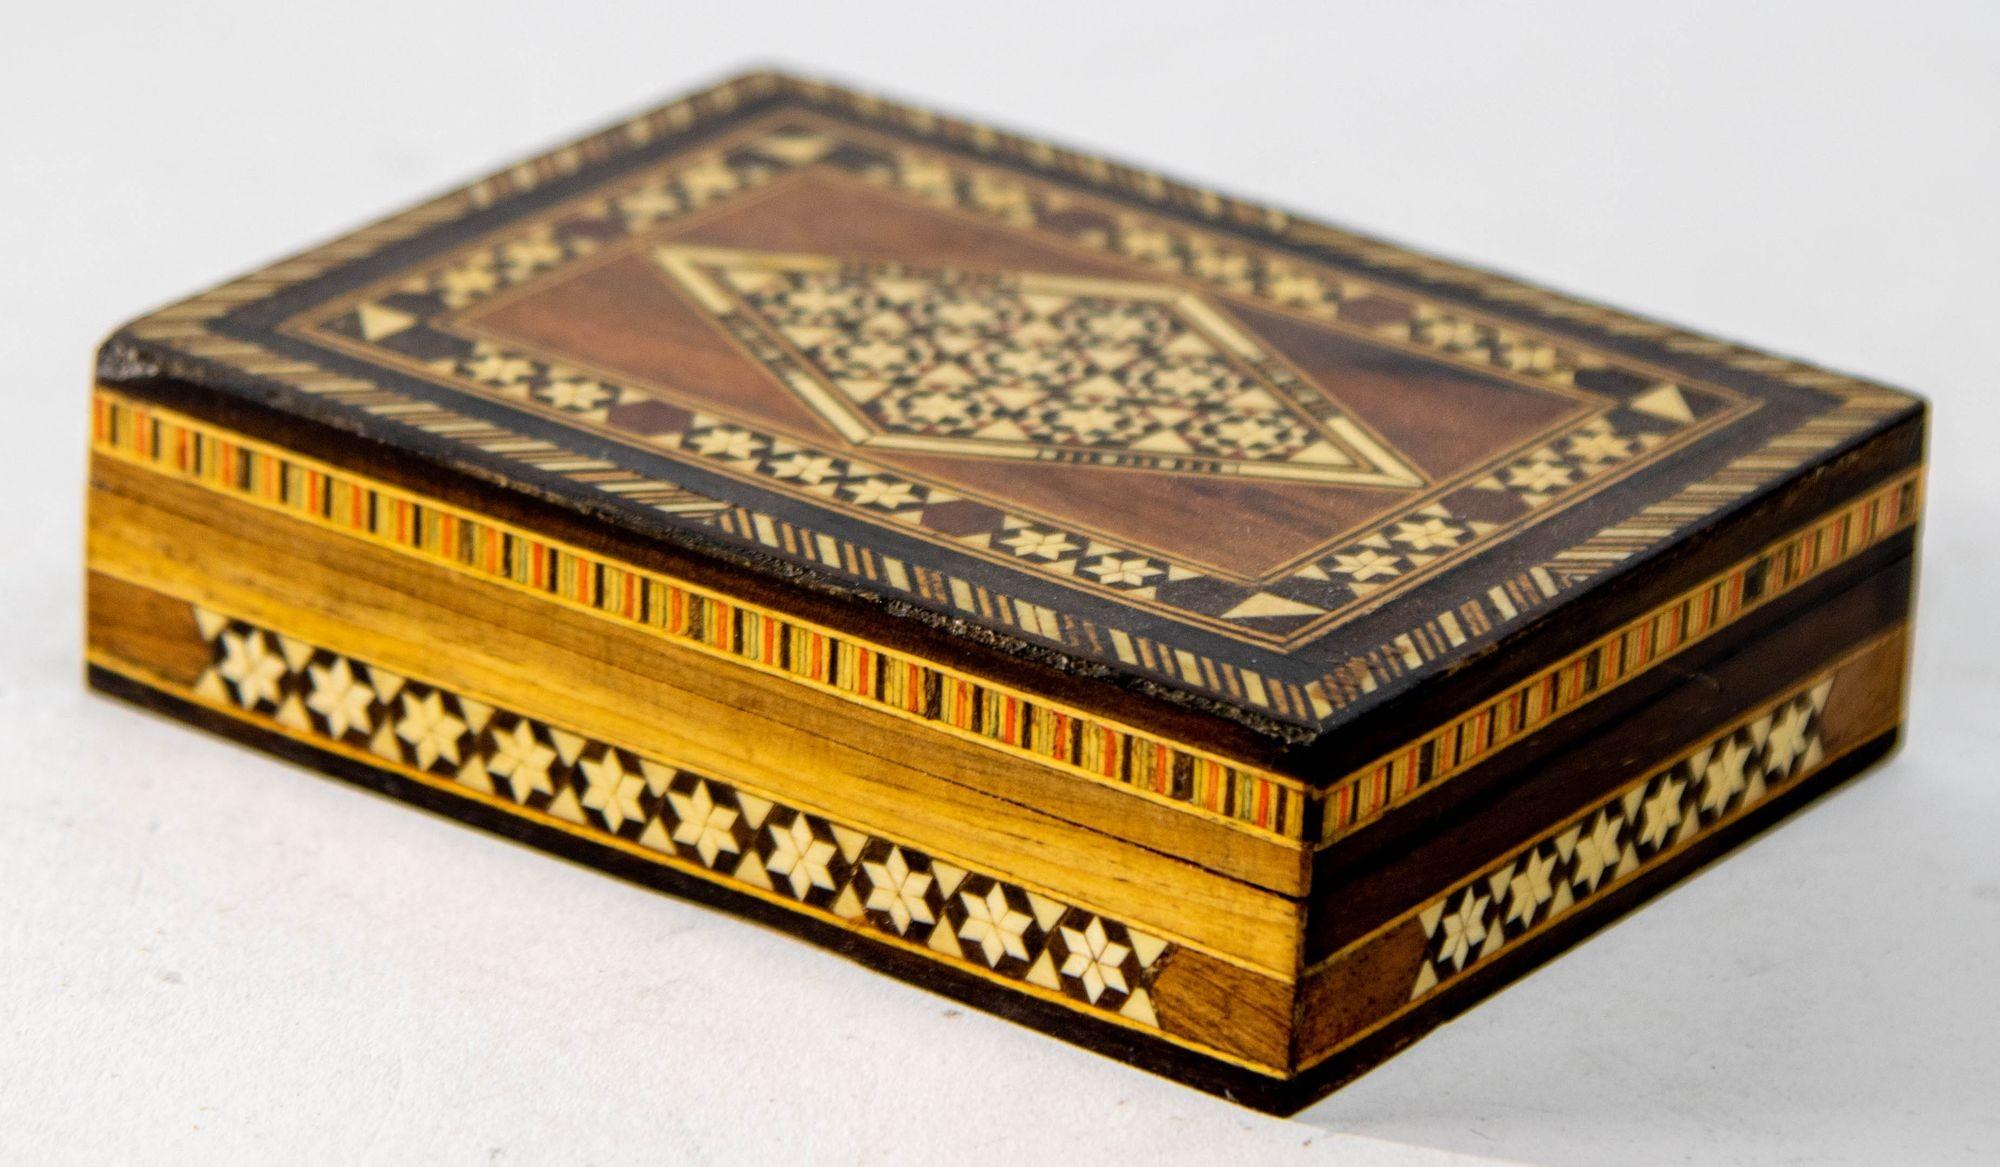 1940s Marquetry Mosaic Wood Inlay Box Moorish Spain.
Exquise boîte en bois Khatam, fabriquée à la main, avec marqueterie de micro-mosaïques.
Boîte artisanale de style moyen-oriental en micro-mosaïques mauresques très fines, et un motif géométrique